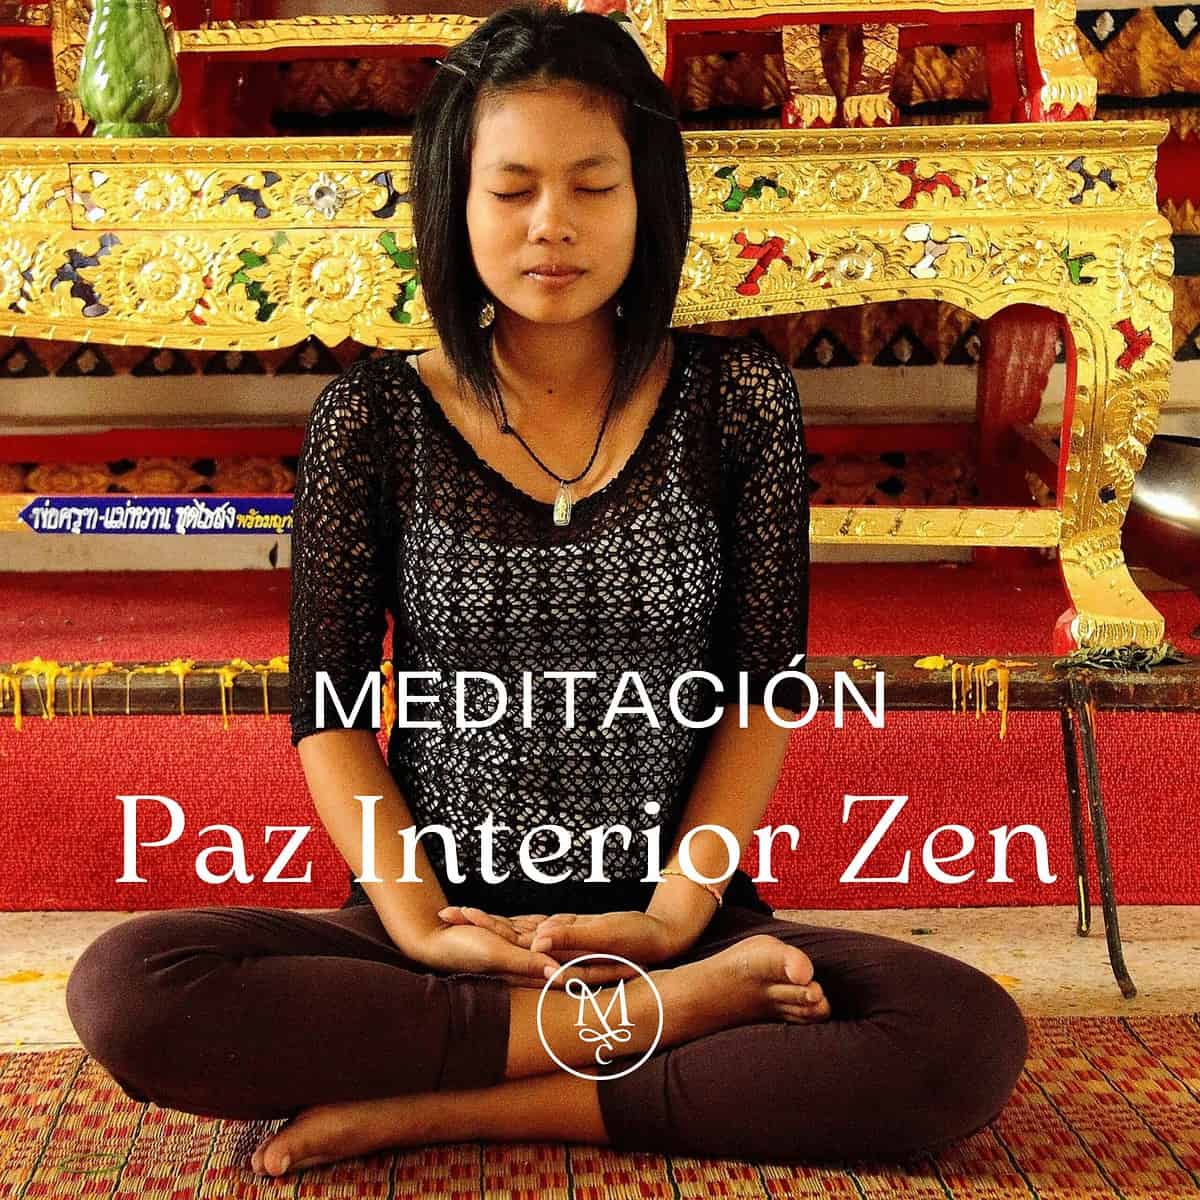 Paz interior zen